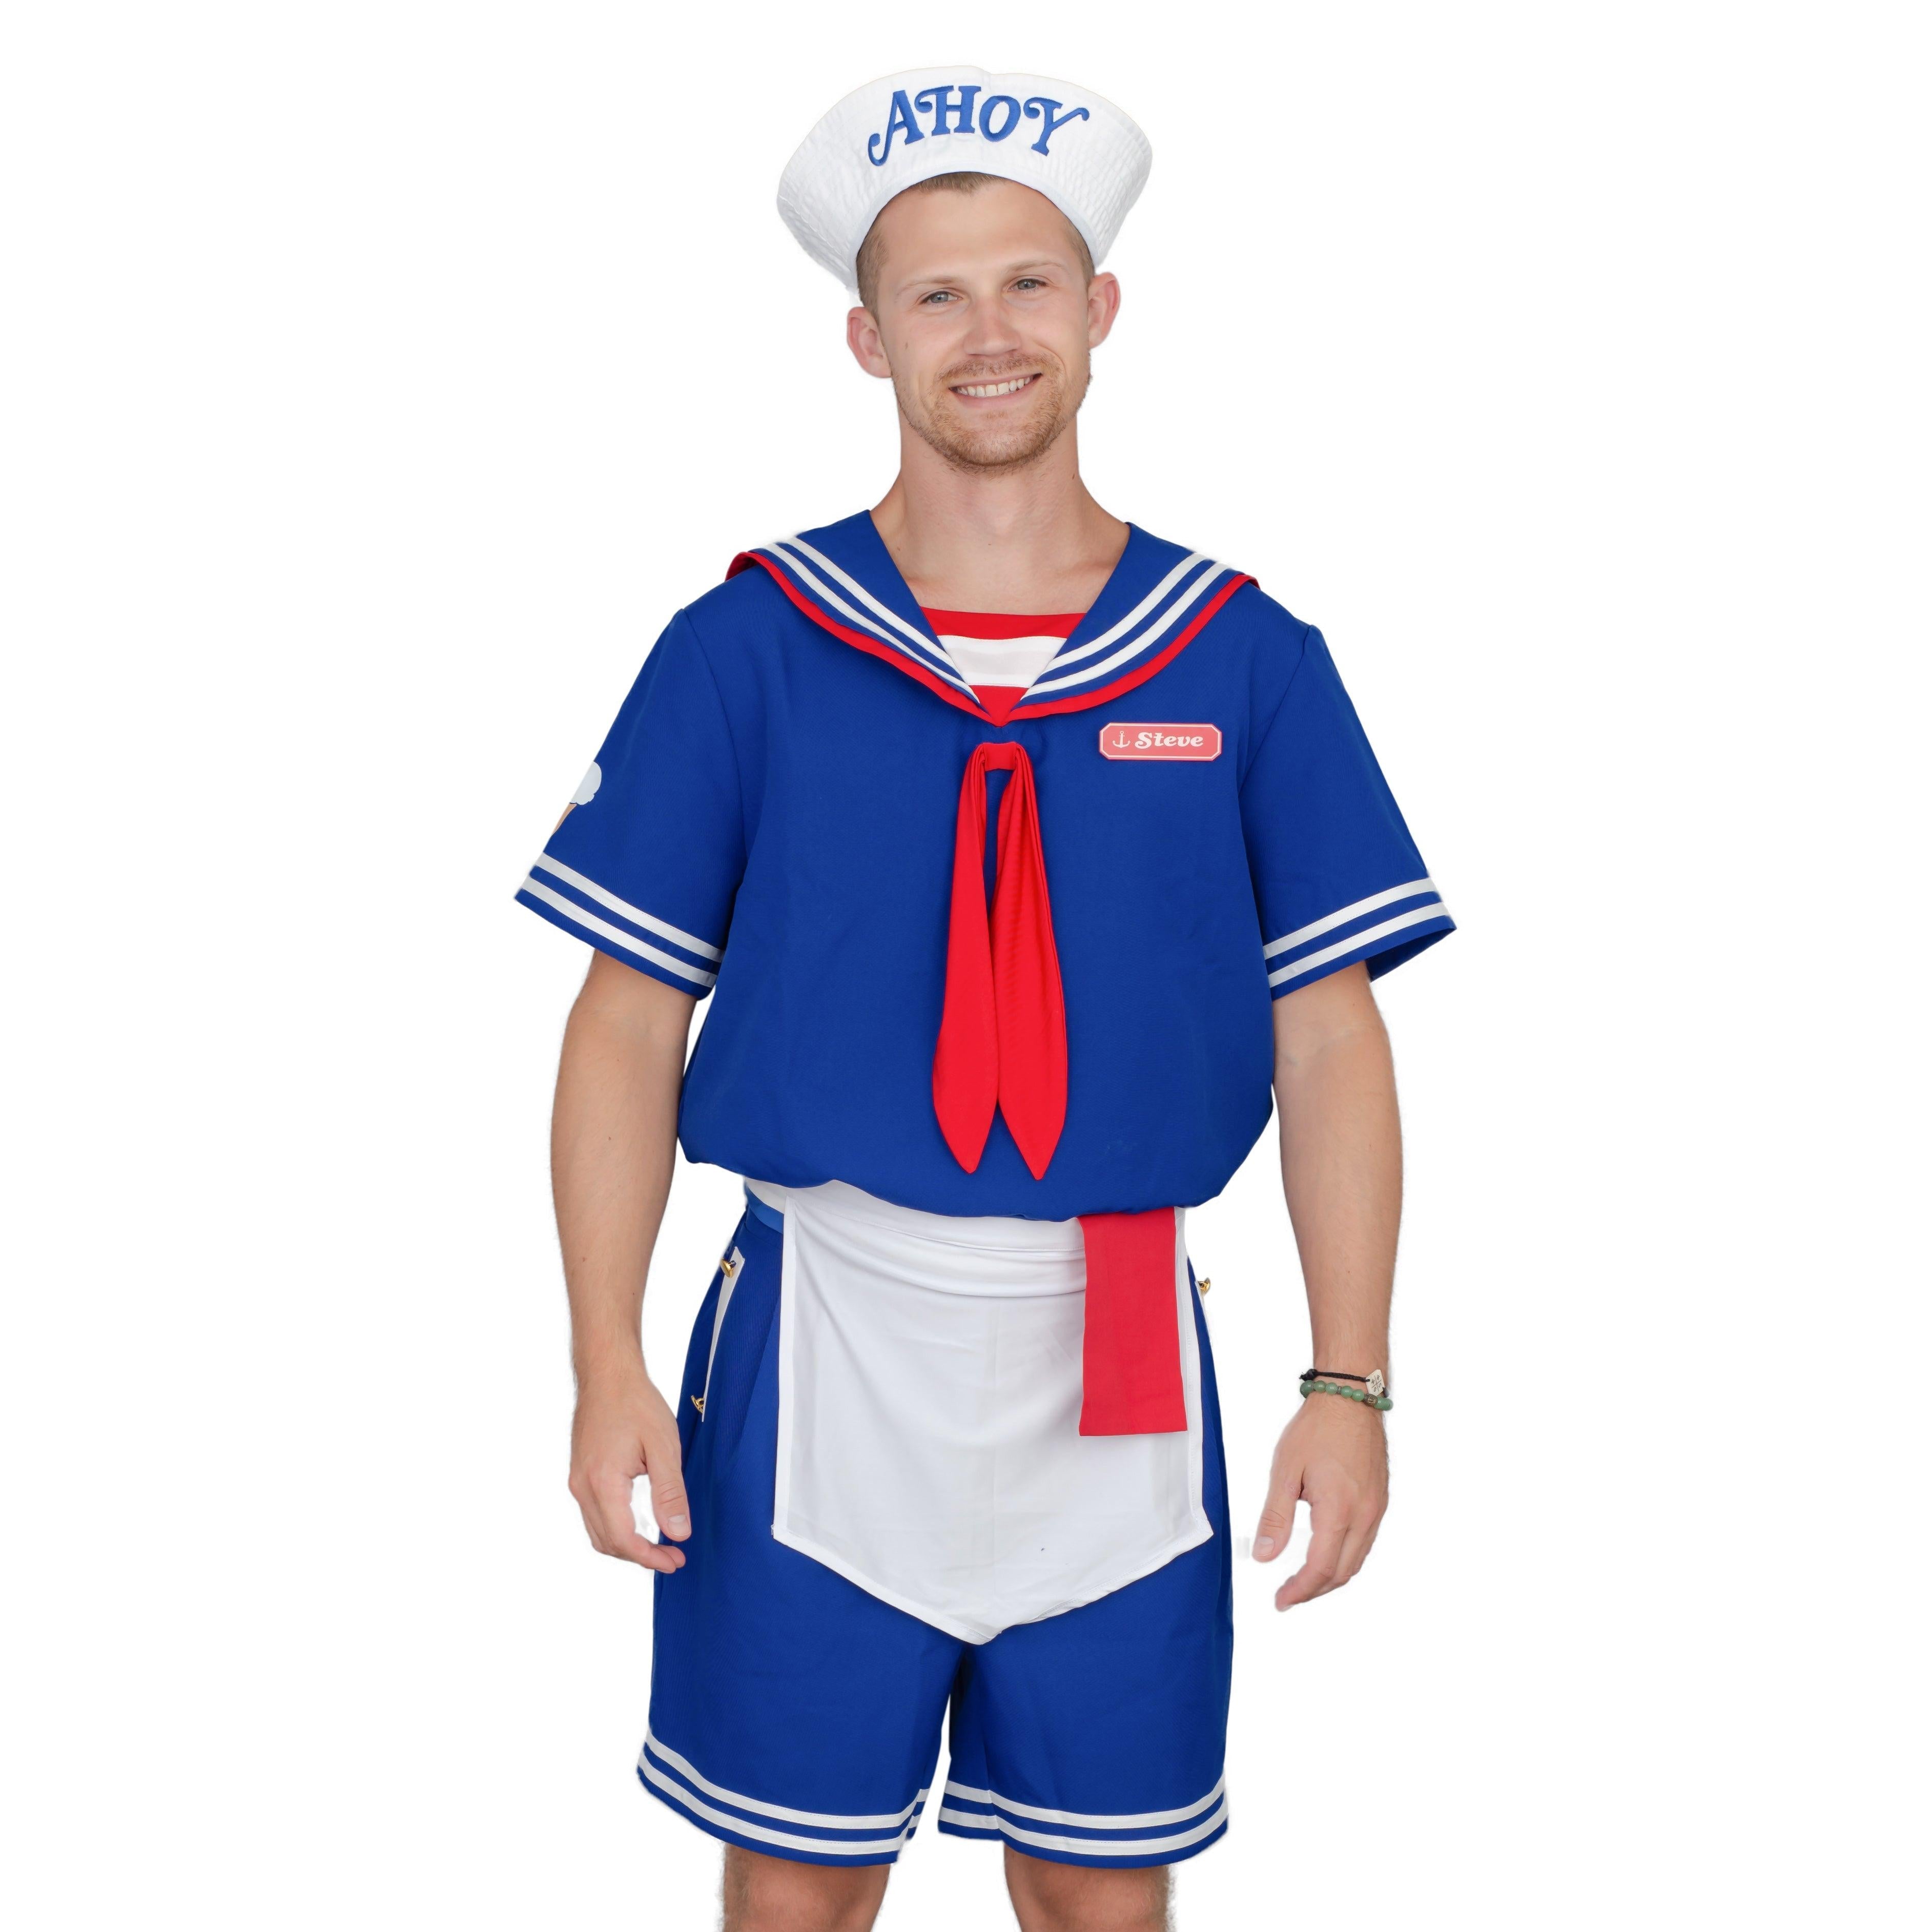 Scoops Ahoy Sailor Halloween Costume Cosplay Set - TVStoreOnline